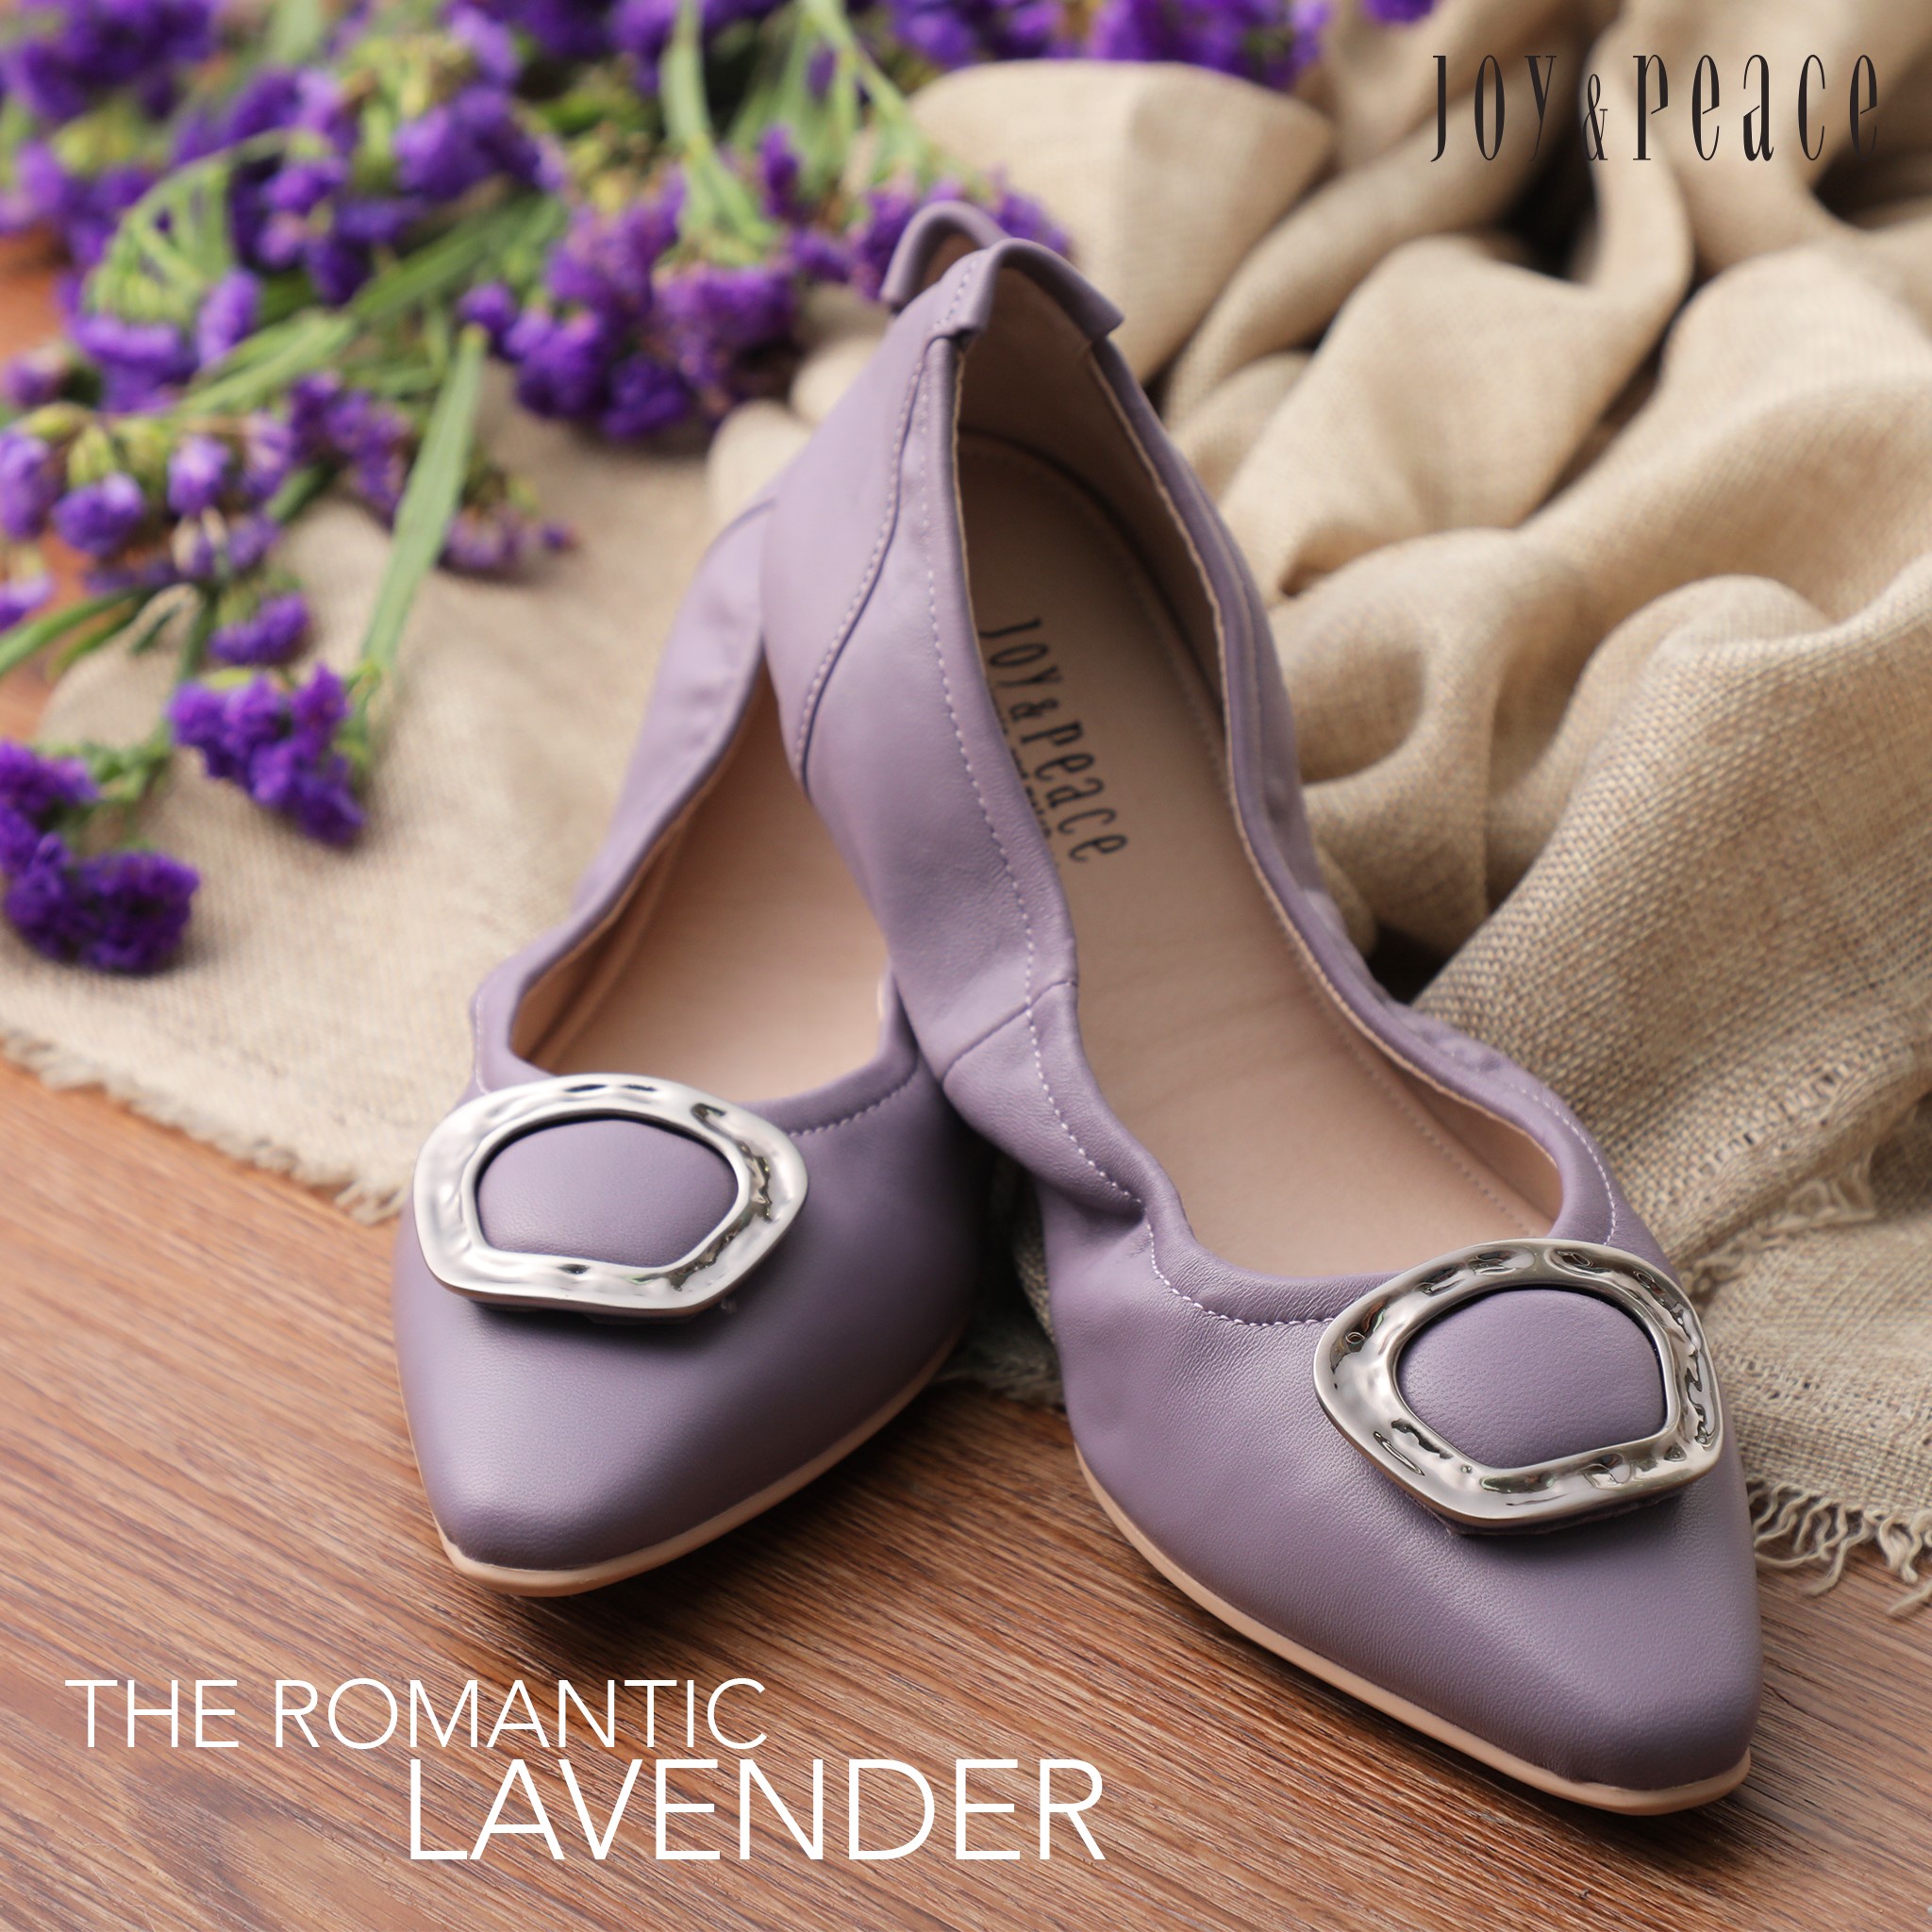 盛夏季節，薰衣草盛放，穿上優雅的紫色平底鞋，感覺就彷如在薰衣草花田中漫步，一步一浪漫，一步一傾心。 